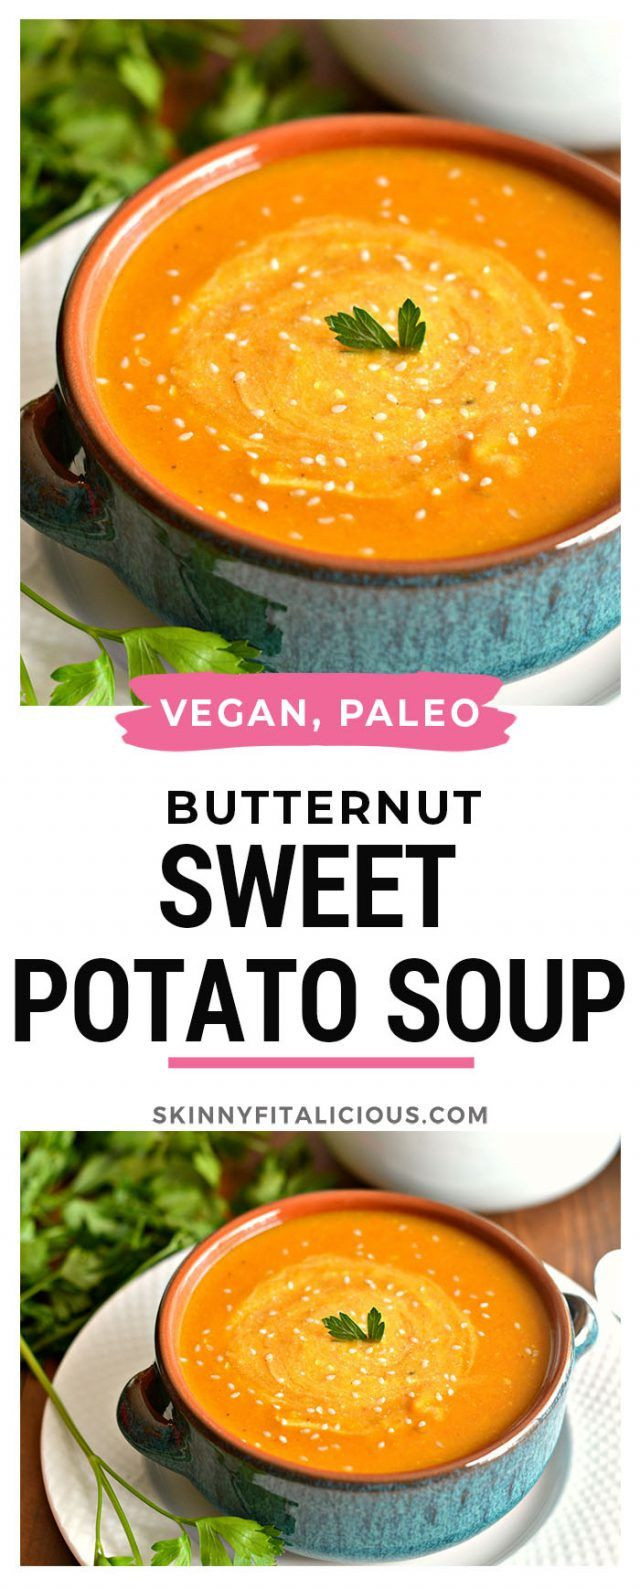 Low Calorie Potato Soup
 Butternut Sweet Potato Soup GF Paleo Vegan Low Cal